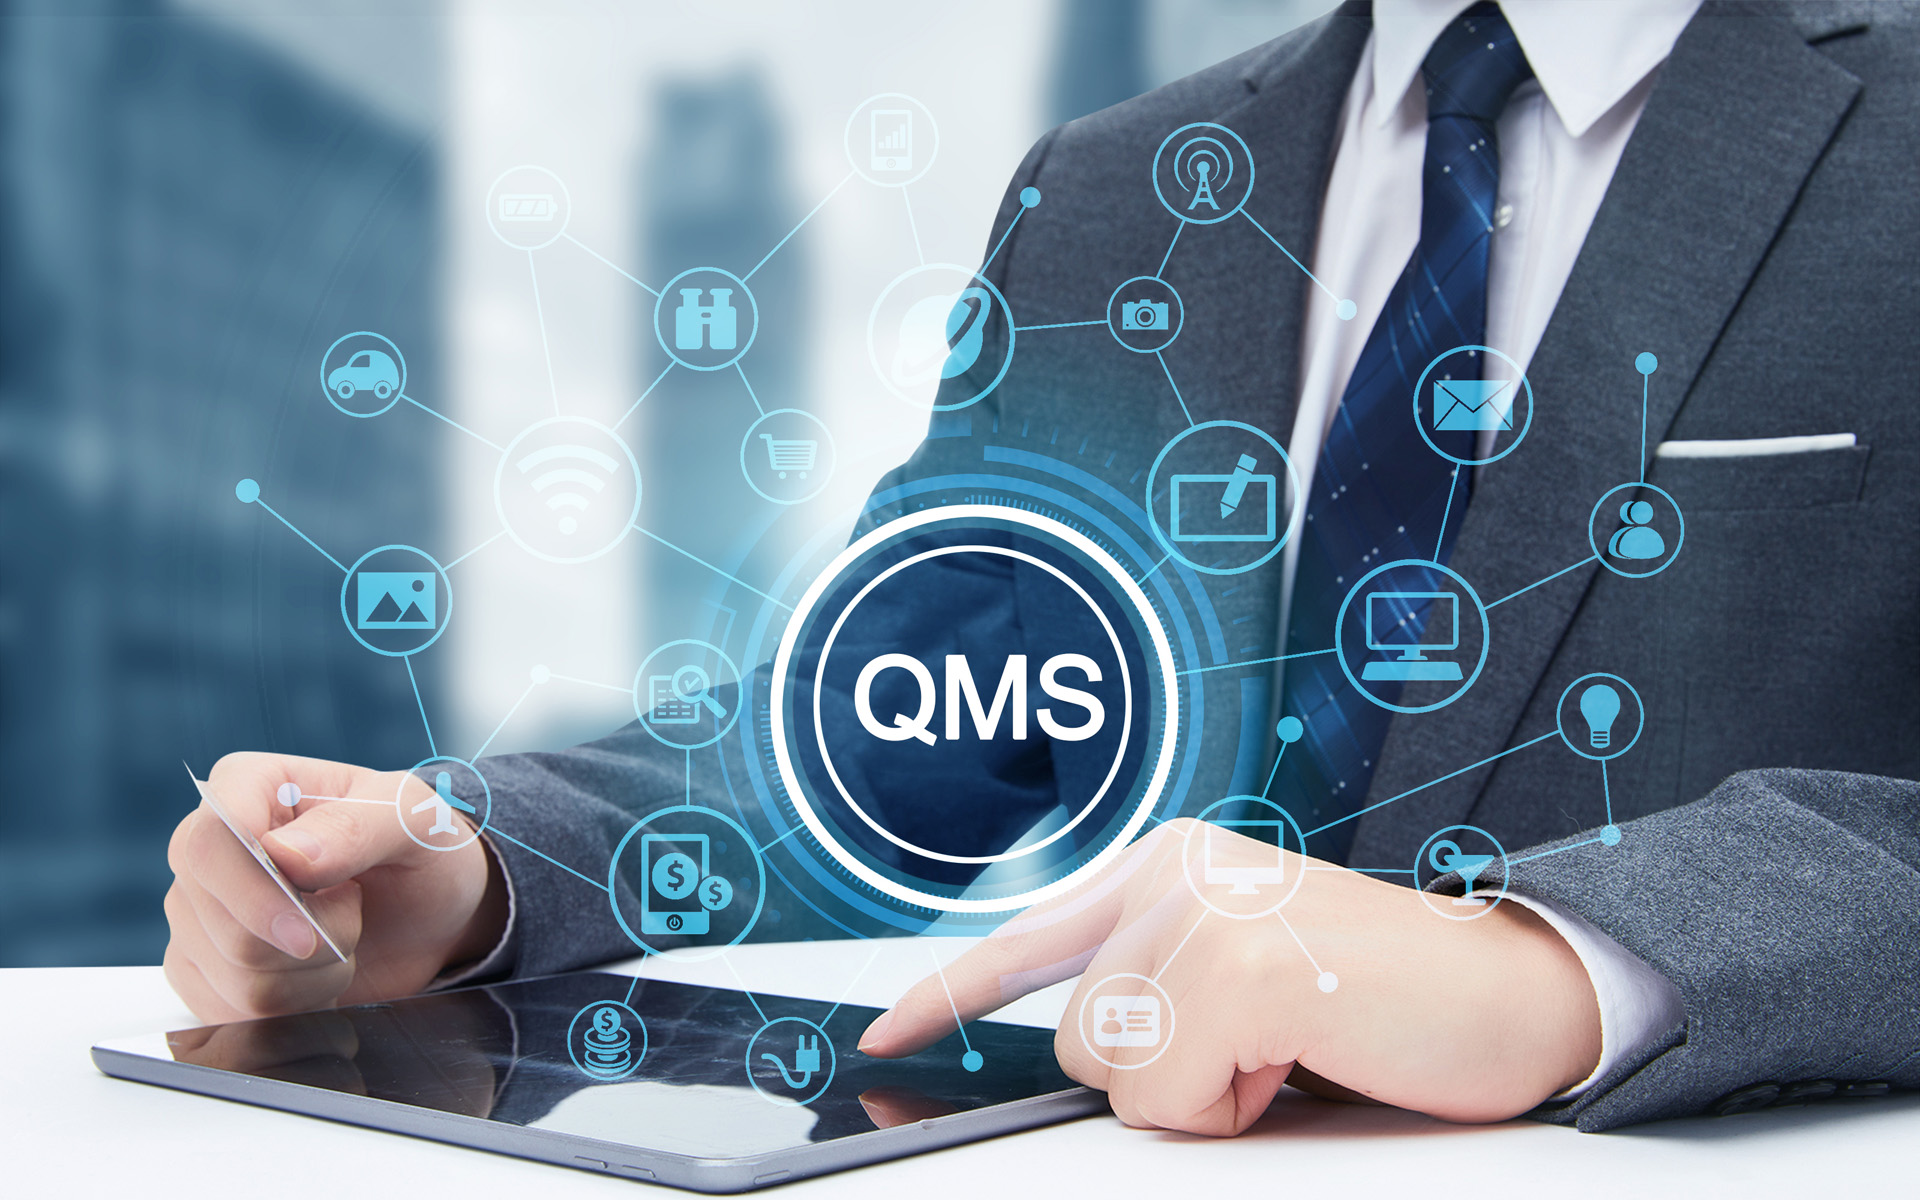 质量管理QMS软件,现场质检数据采集,精益生产管理